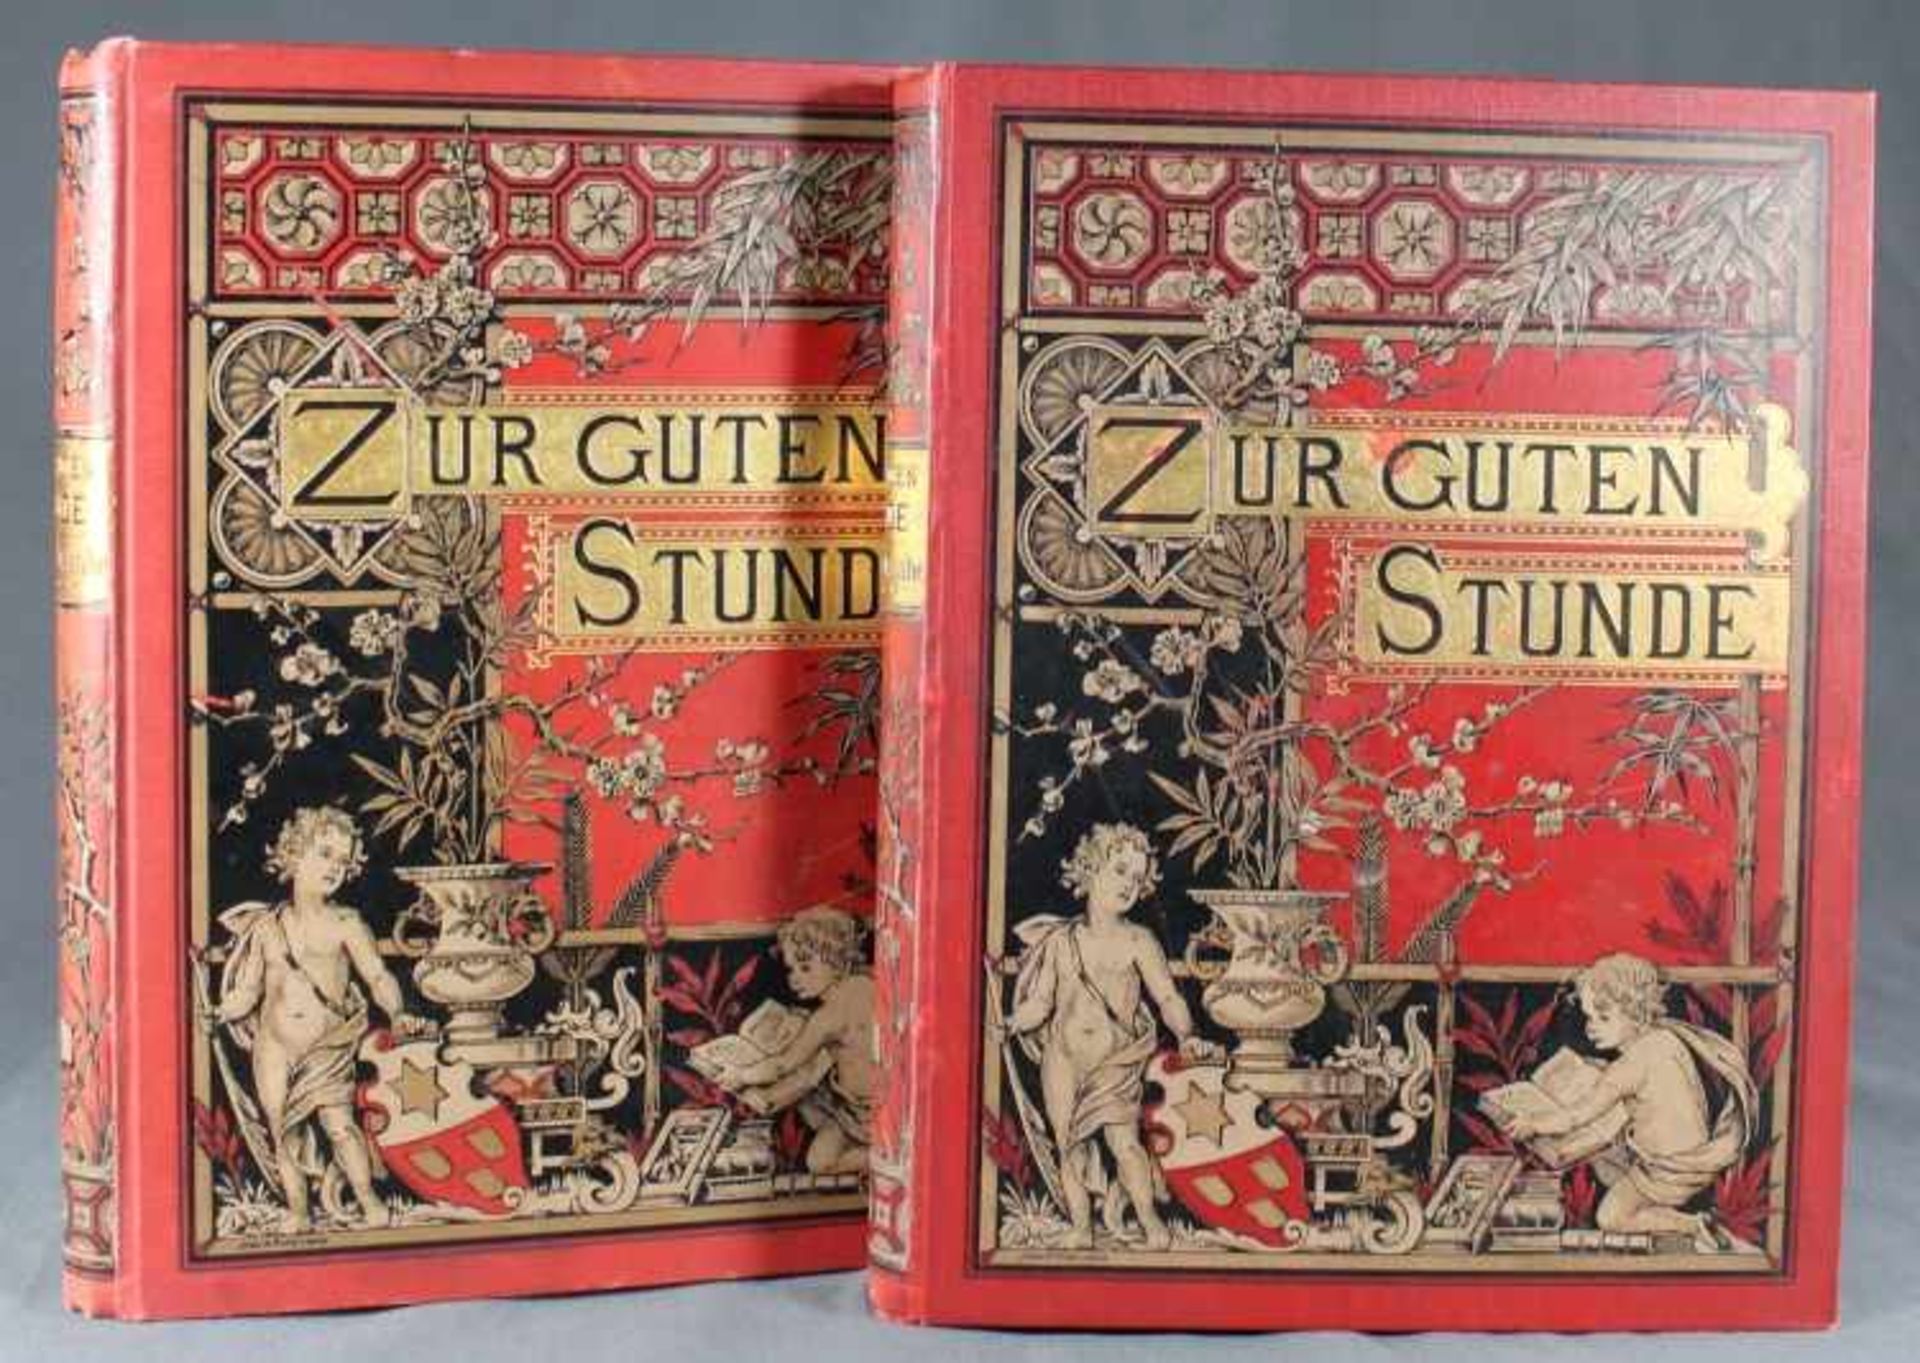 2 Bände "Zur guten Stunde, illustrierte Zeitschrift", Salon-Ausgabe Band V + VI, Deutsches